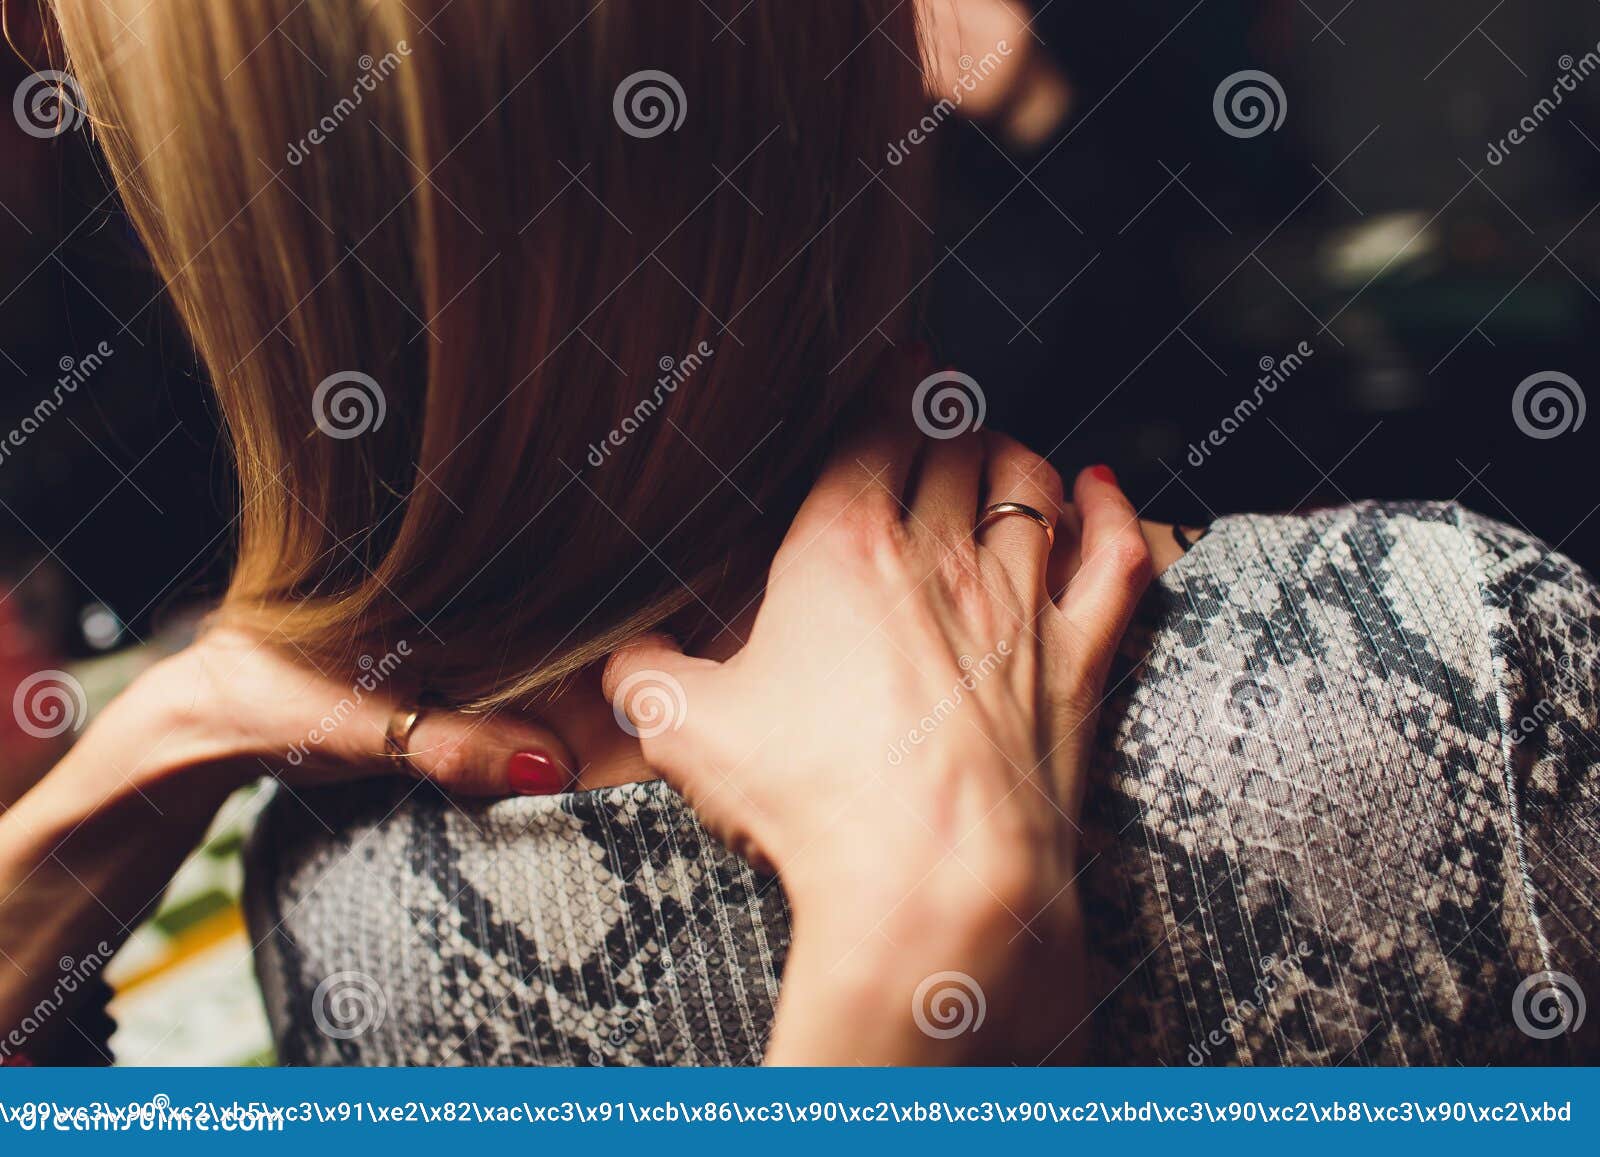 Lesbians Massaging